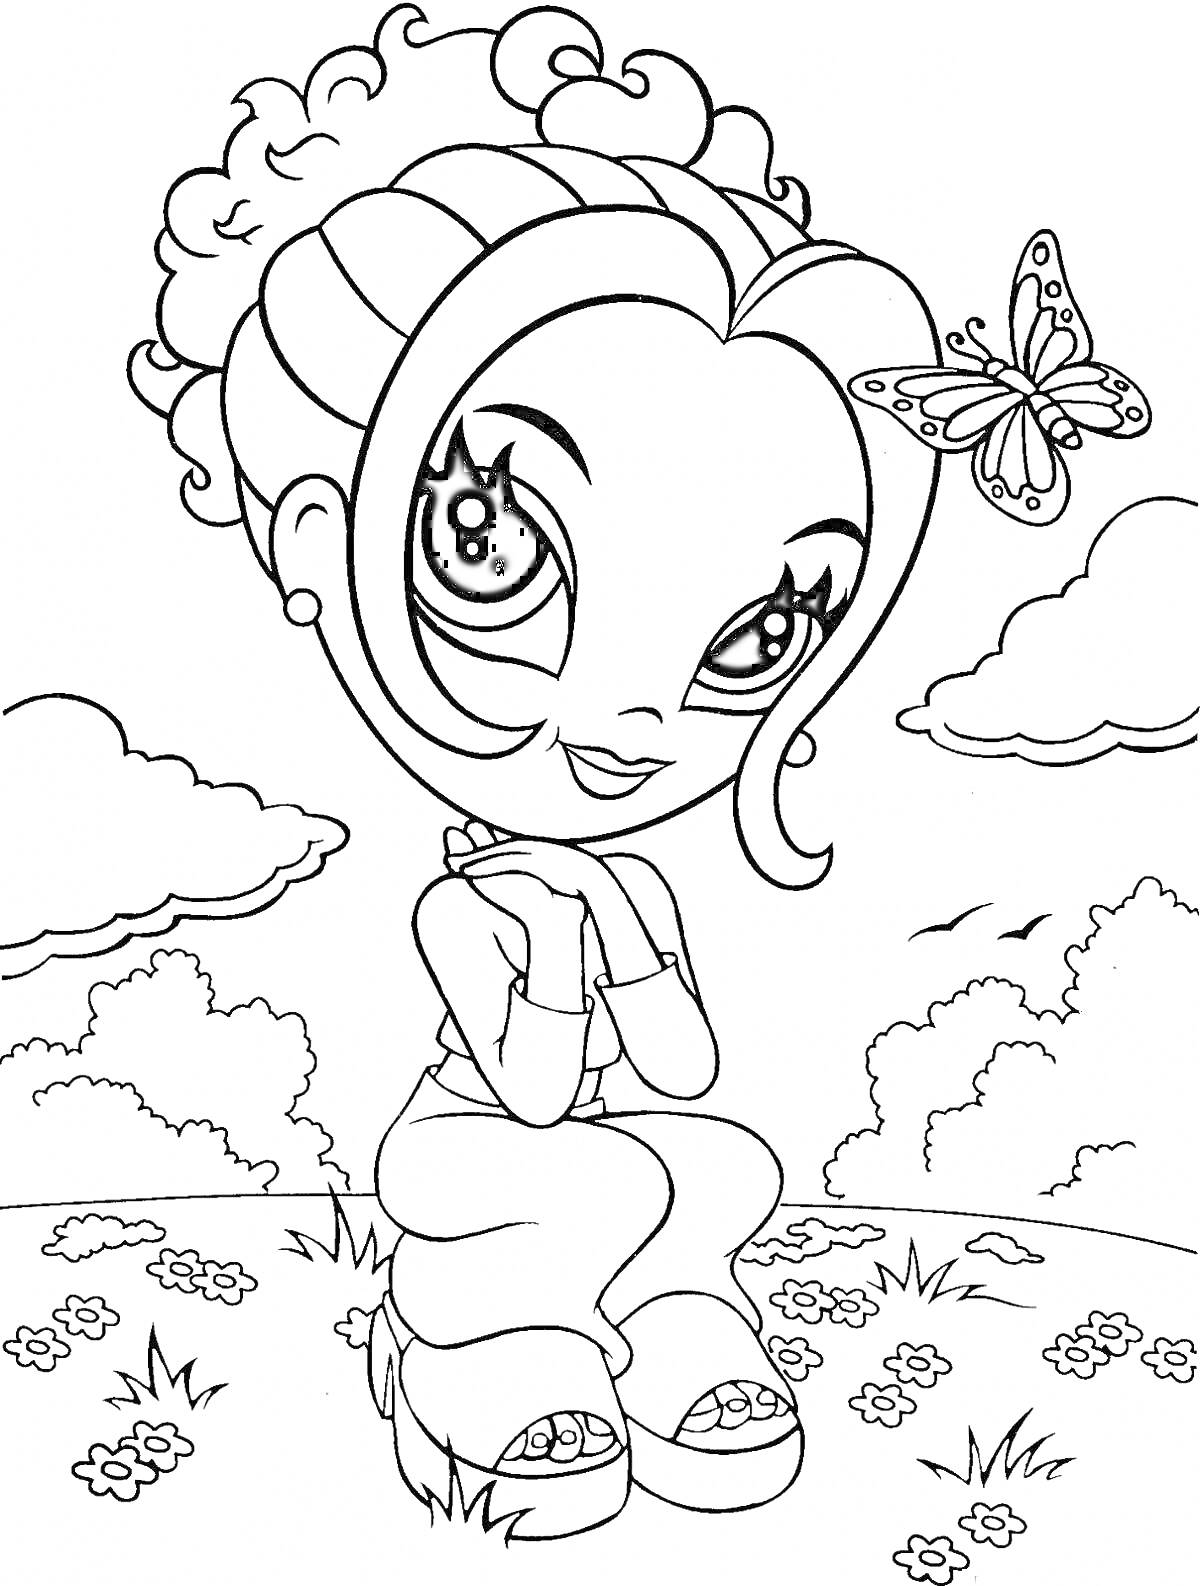 На раскраске изображено: Девочка, Кудрявые волосы, Бабочка, Природа, Облака, Цветы, Трава, Мультипликационный стиль